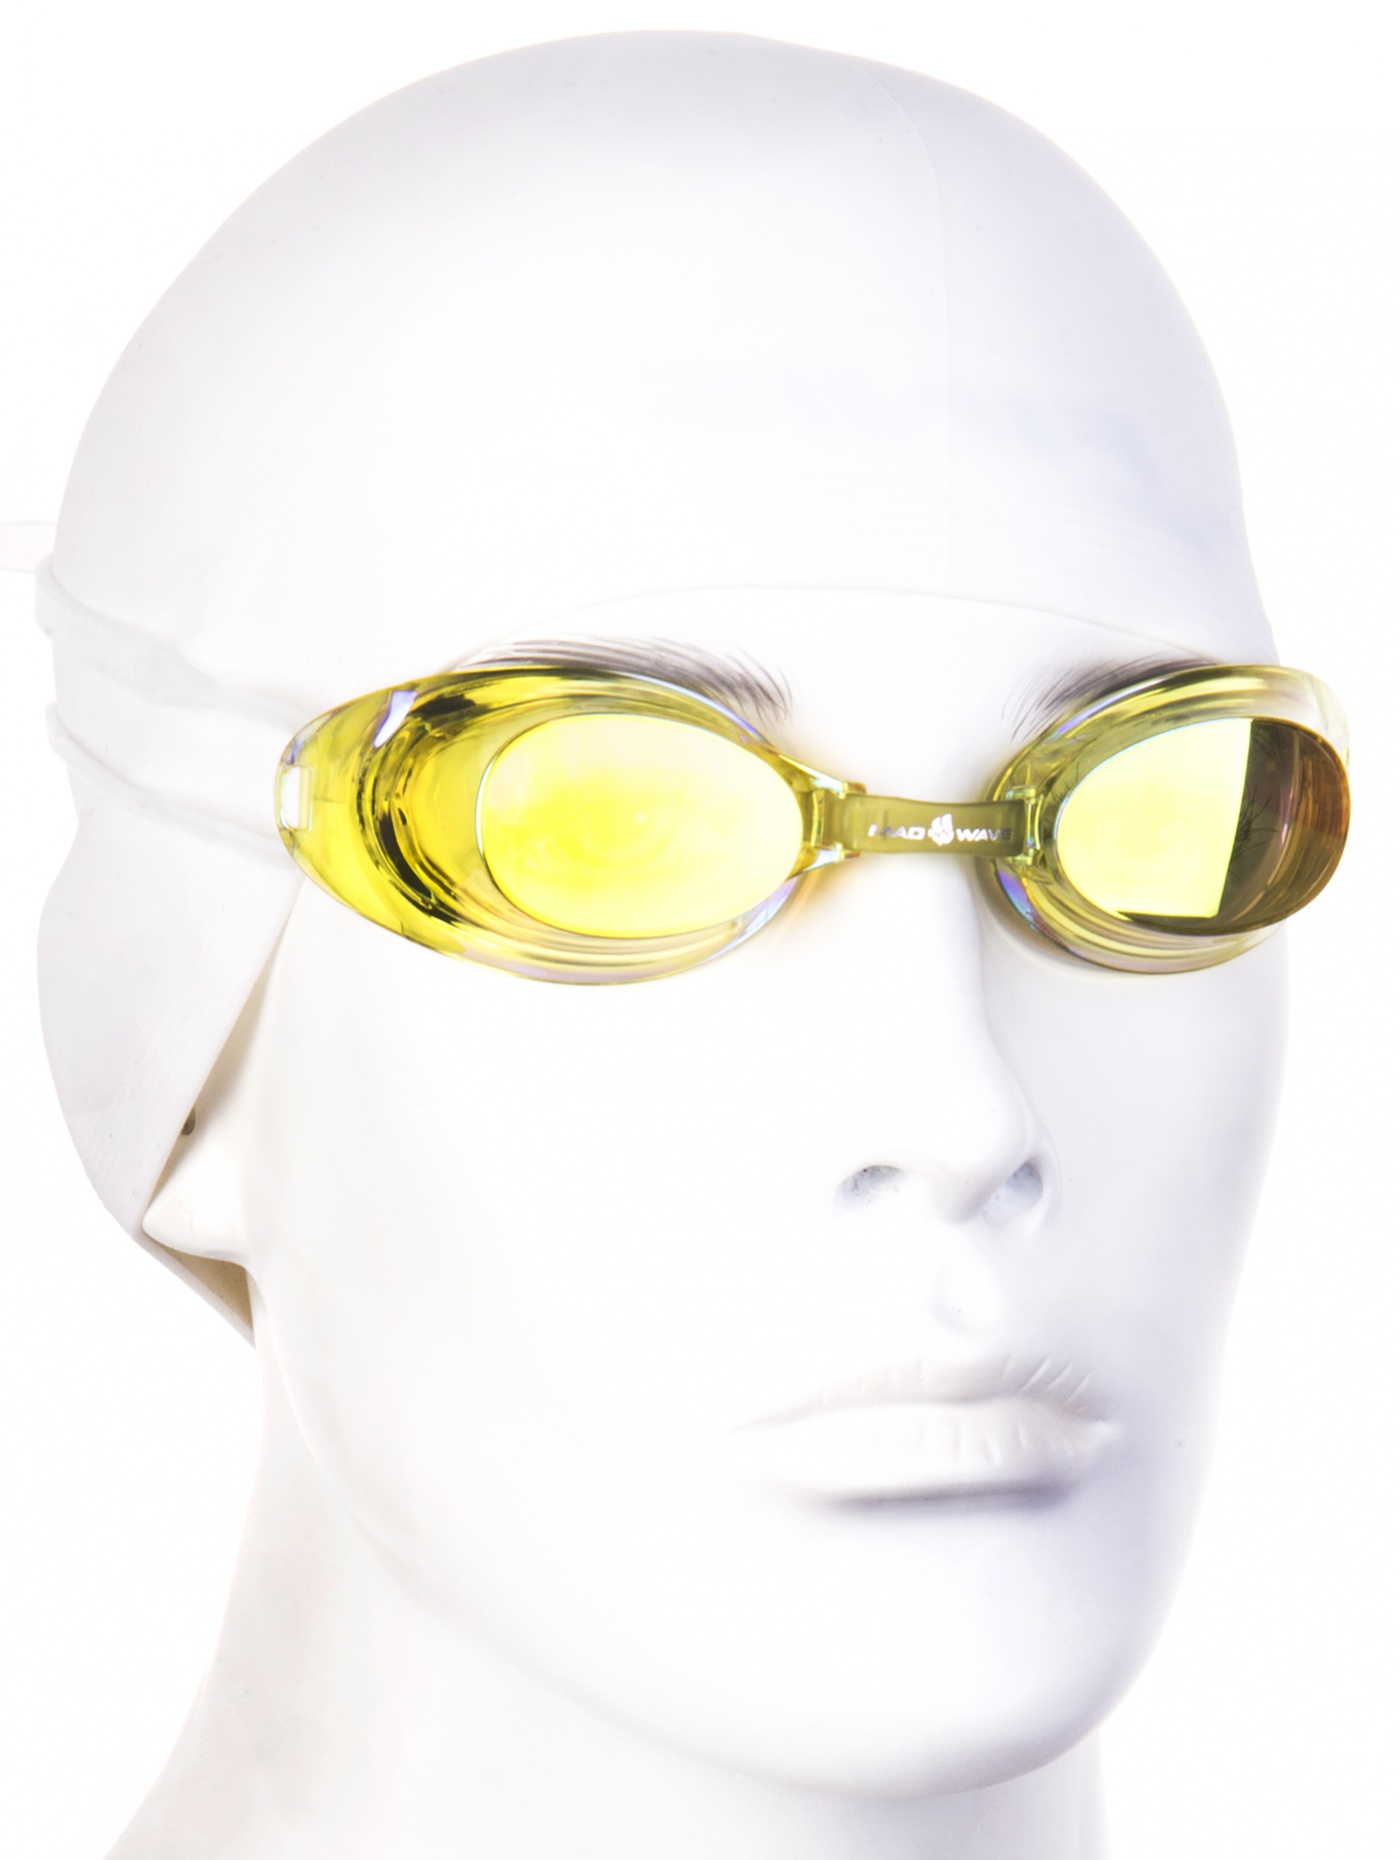 Plavecké brýle mad wave liquid racing automatic mirror žlutá